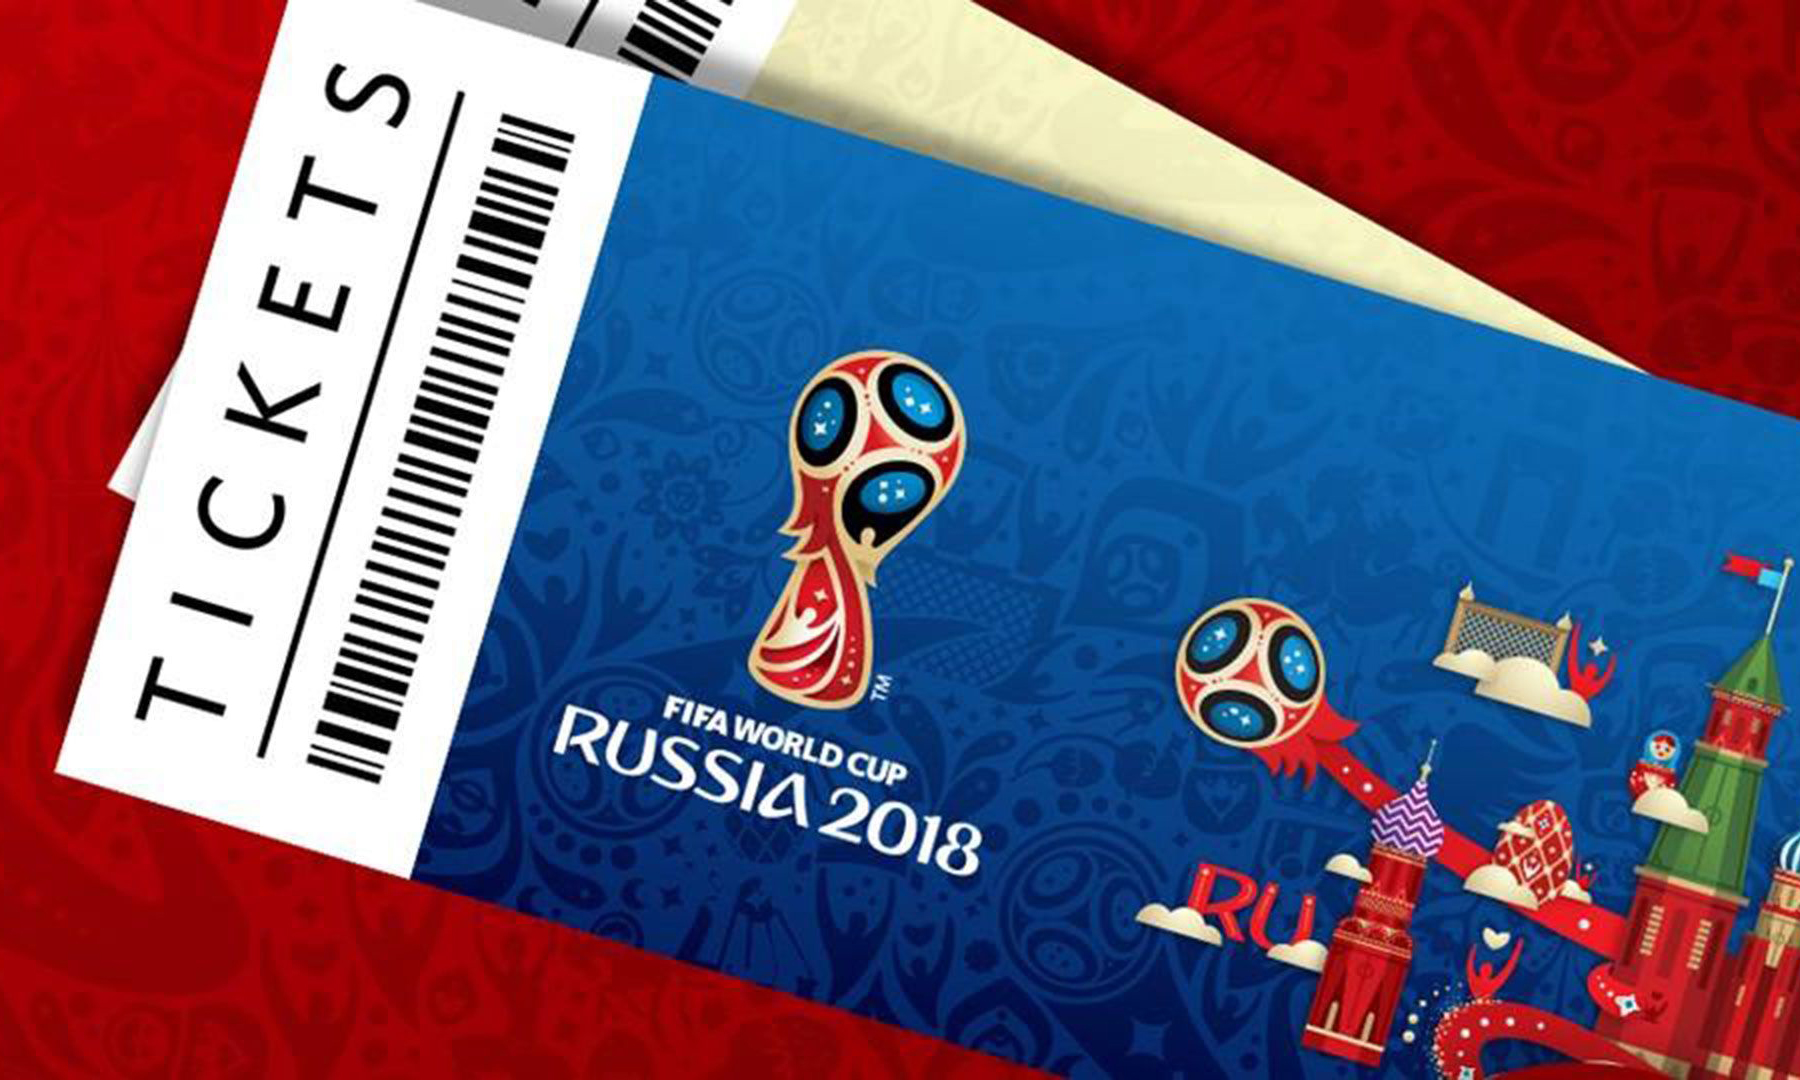 距离 2018 俄罗斯世界杯开幕还有不到 3 个月的时间,fifa 近日也正式